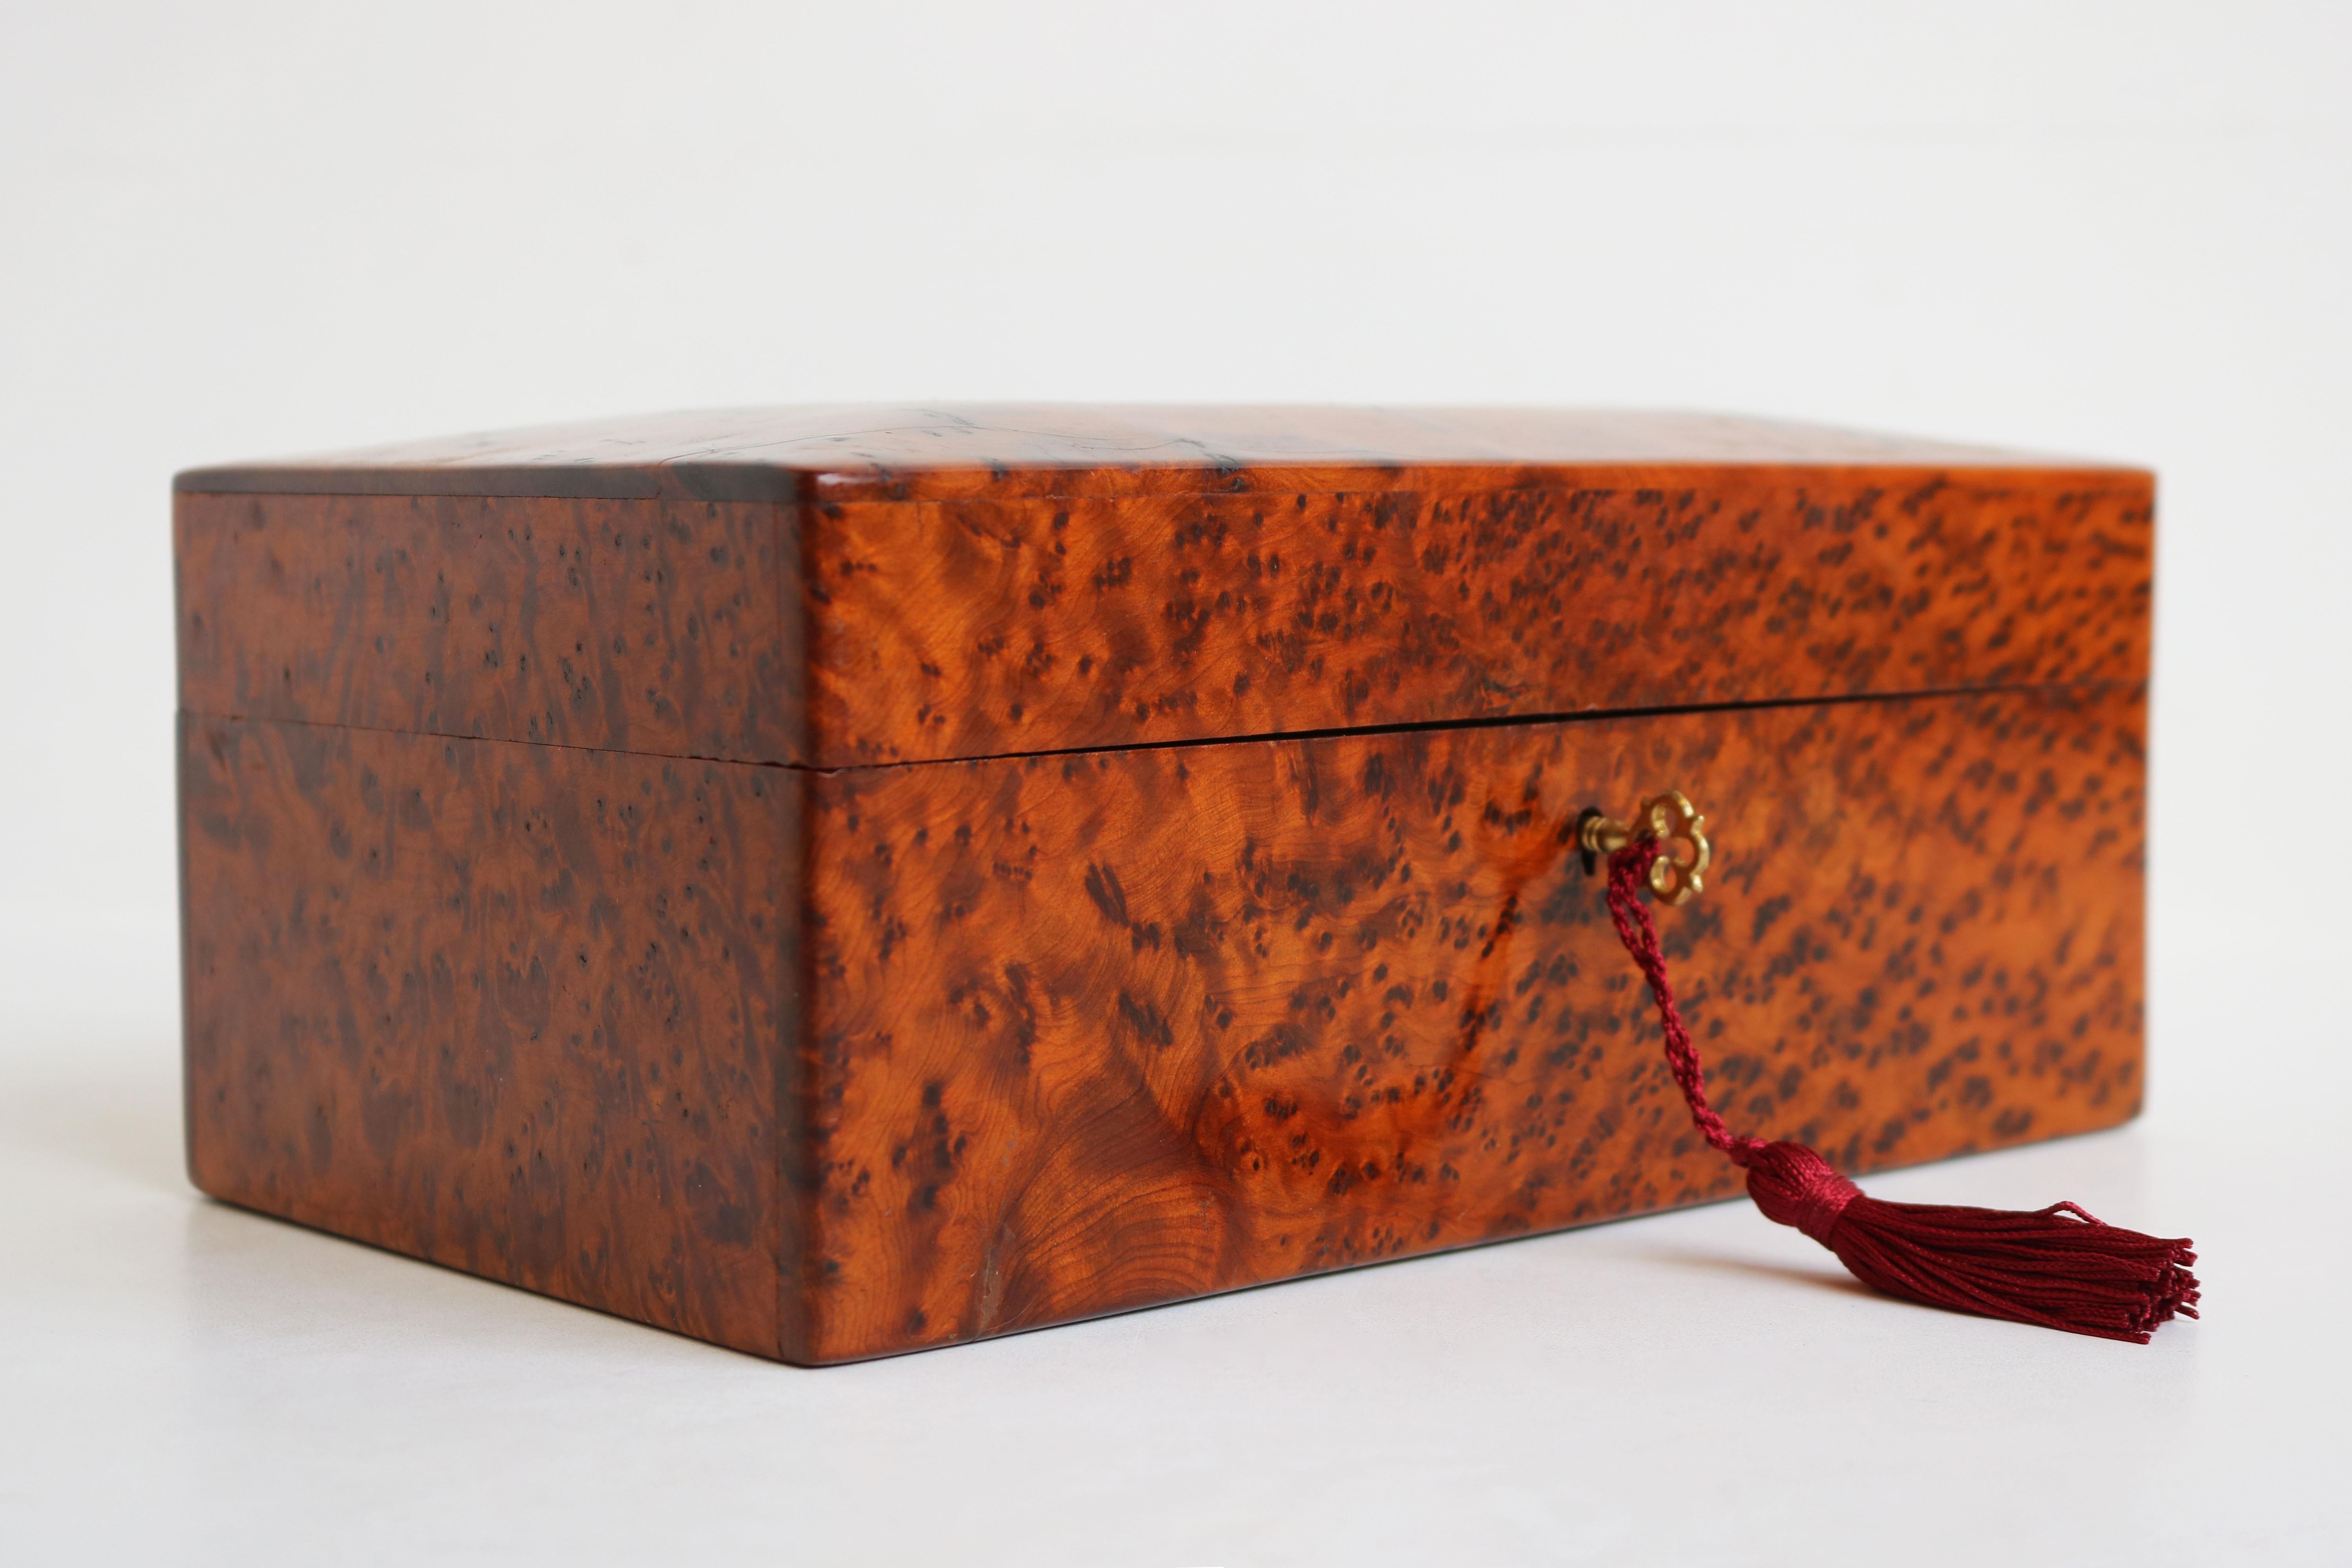 Étonnante boîte à bijoux Napoléon III en bois de ronce, datant du 19e siècle. 
Quel look étonnant que ce bois de ronce poli fabriqué avec un savoir-faire de haute qualité 
Cette boîte à bijoux est livrée avec sa serrure et sa clé d'origine.